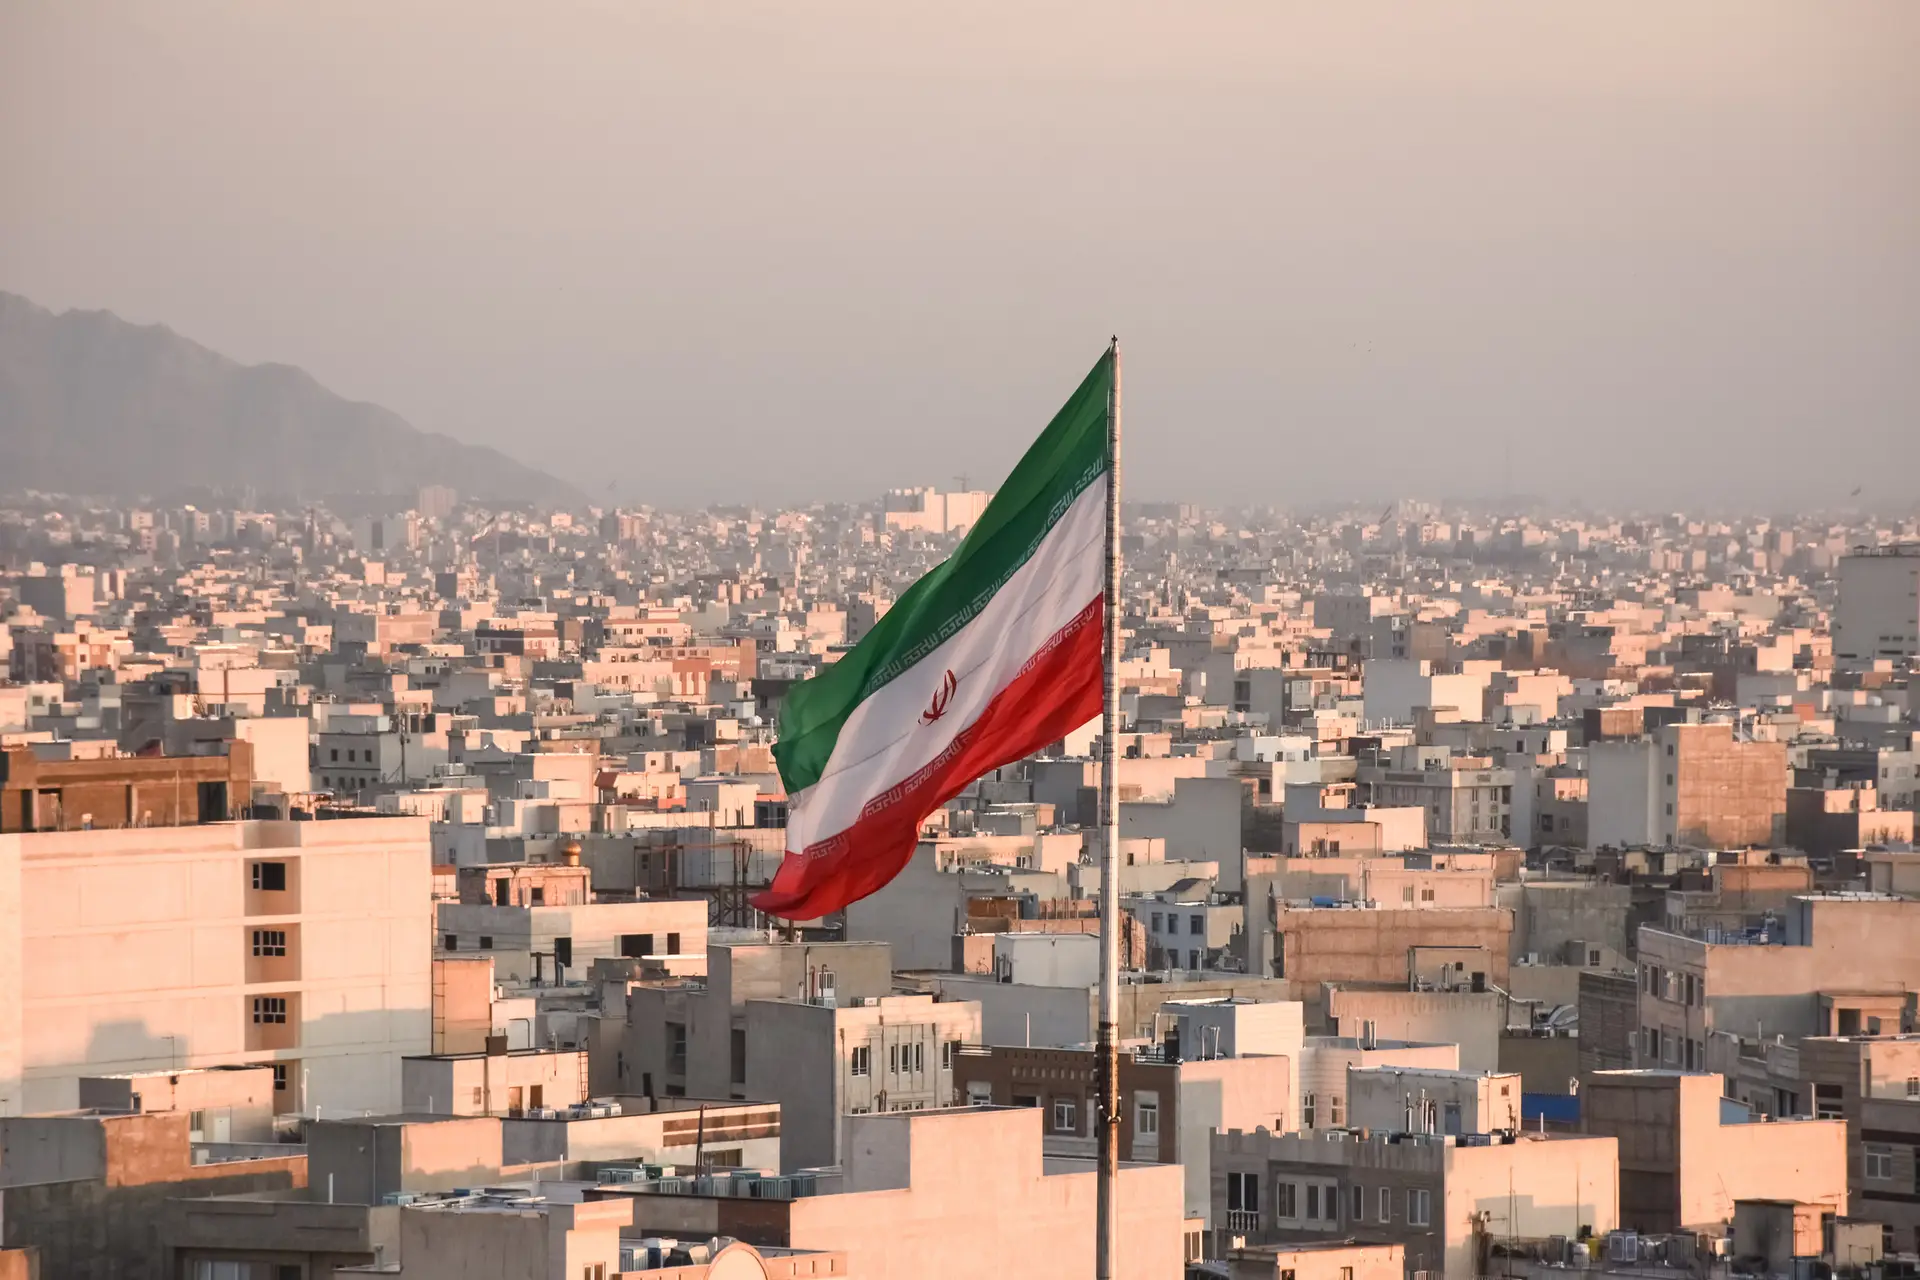 Irão apreendeu navio de bandeira portuguesa por "violação de normas"